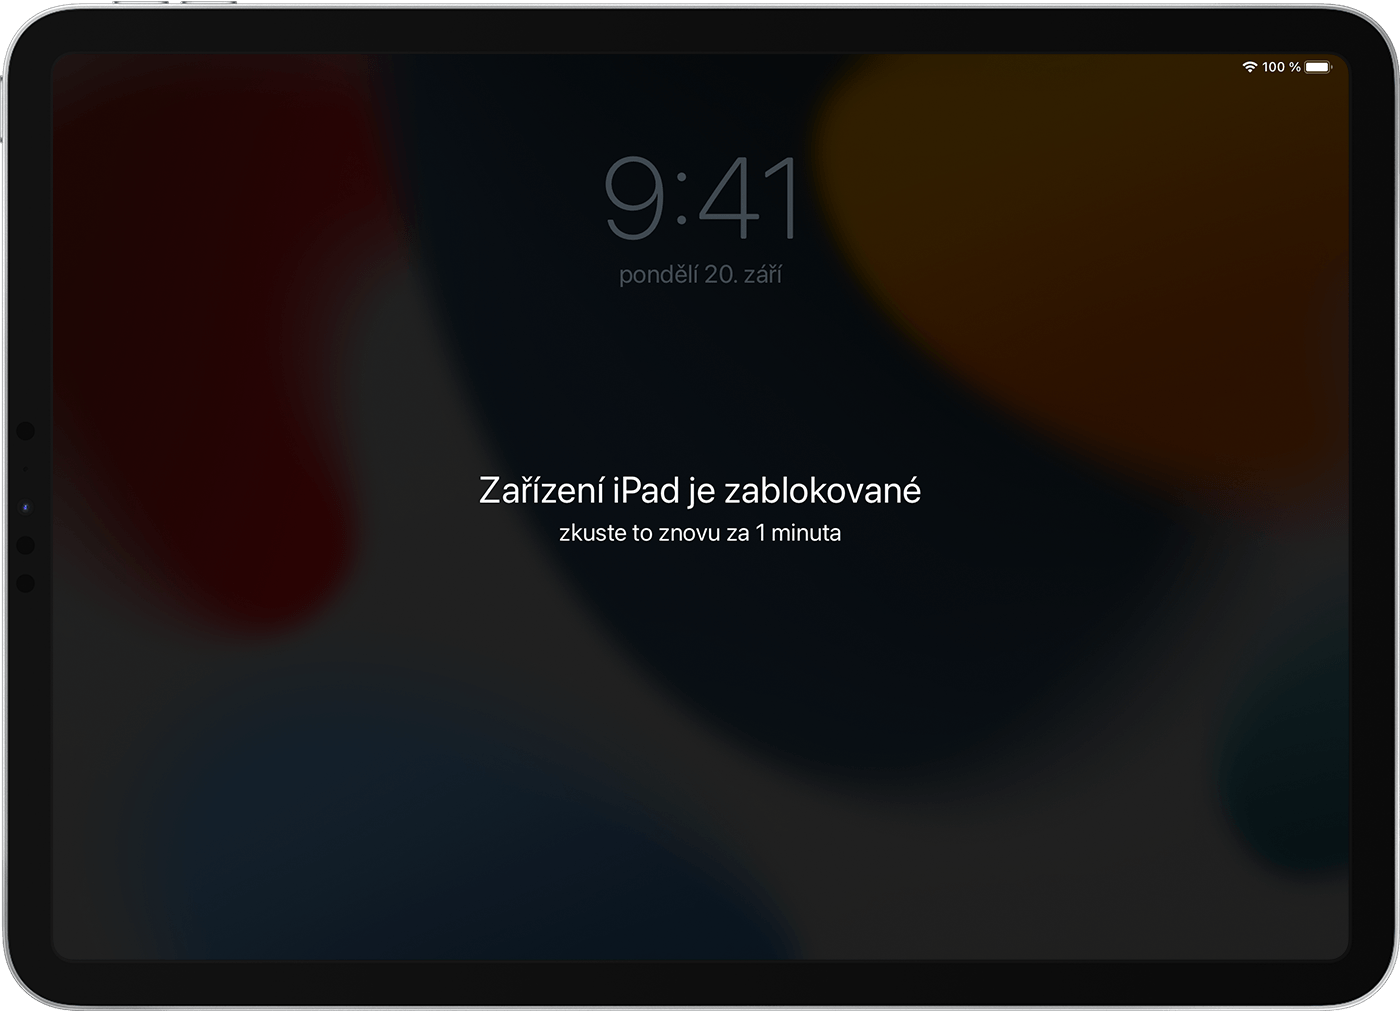 iPad zobrazující obrazovku se zprávou, že je iPad zablokován.